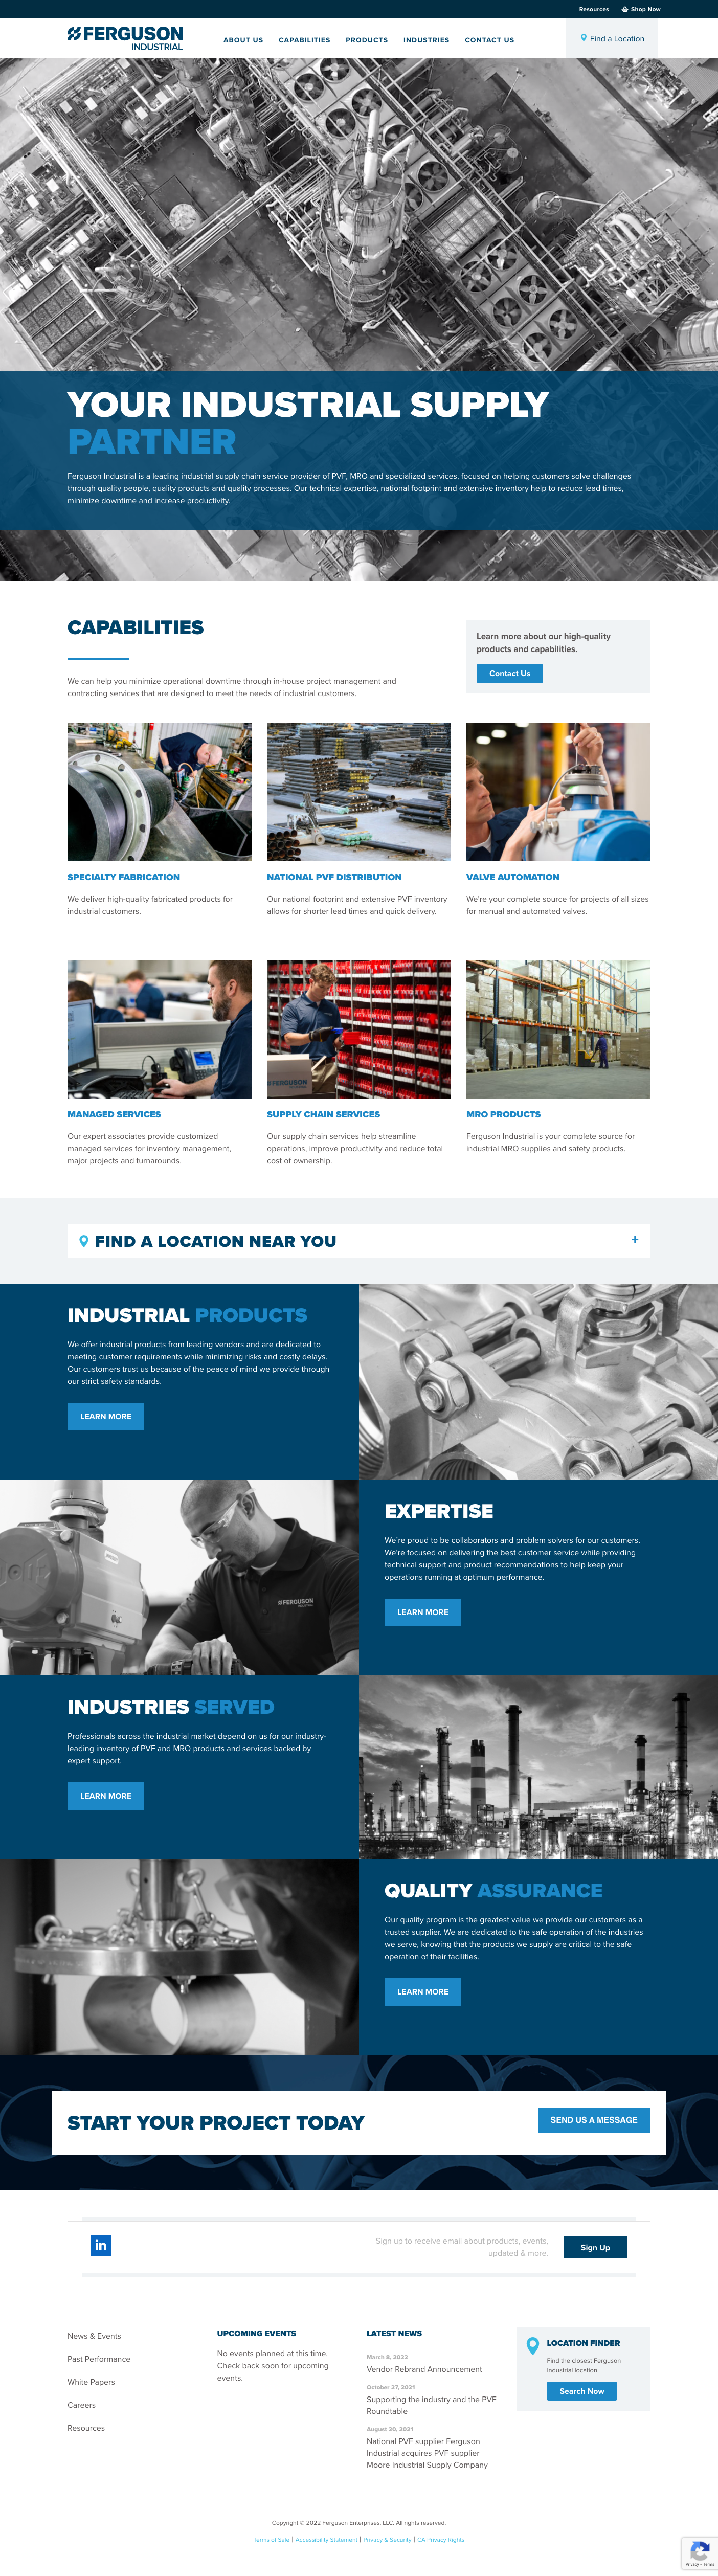 Website Design & Development for Ferguson Industrial